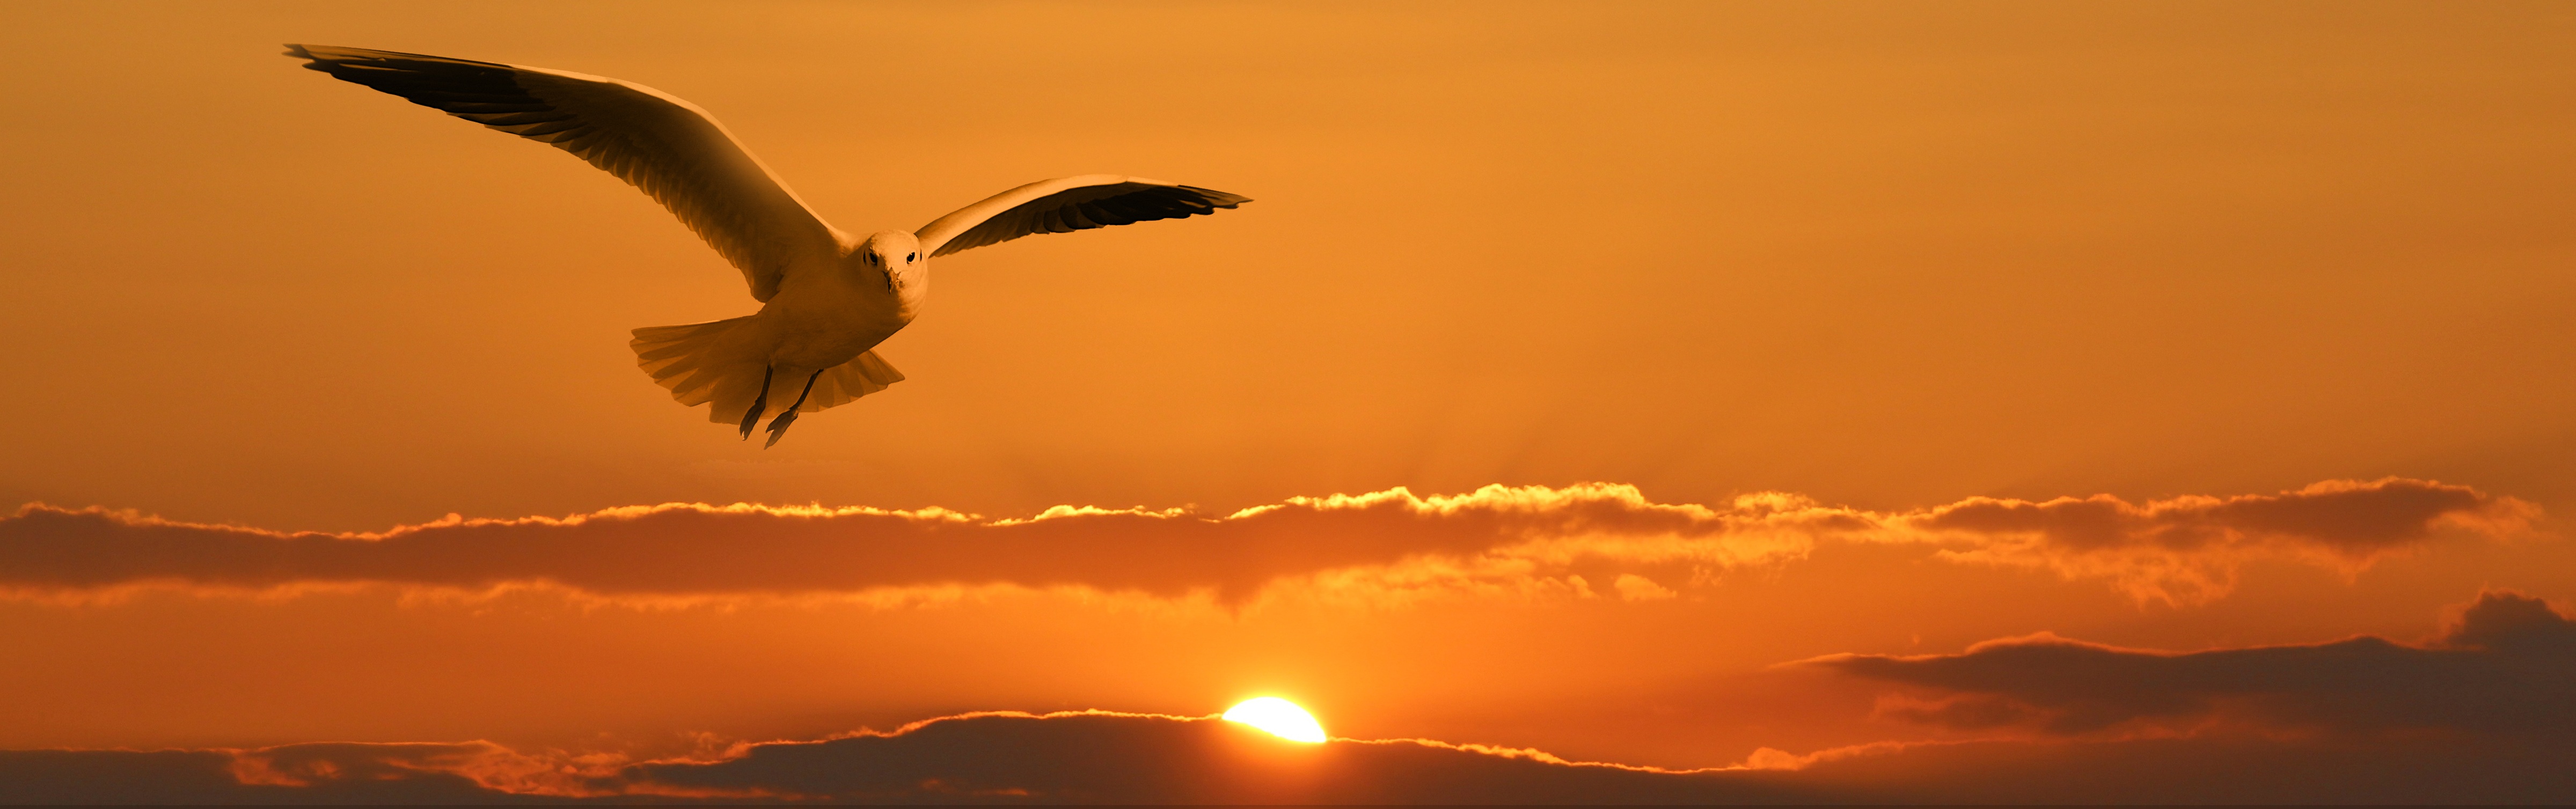 Фото бесплатно летать, закат, чайка